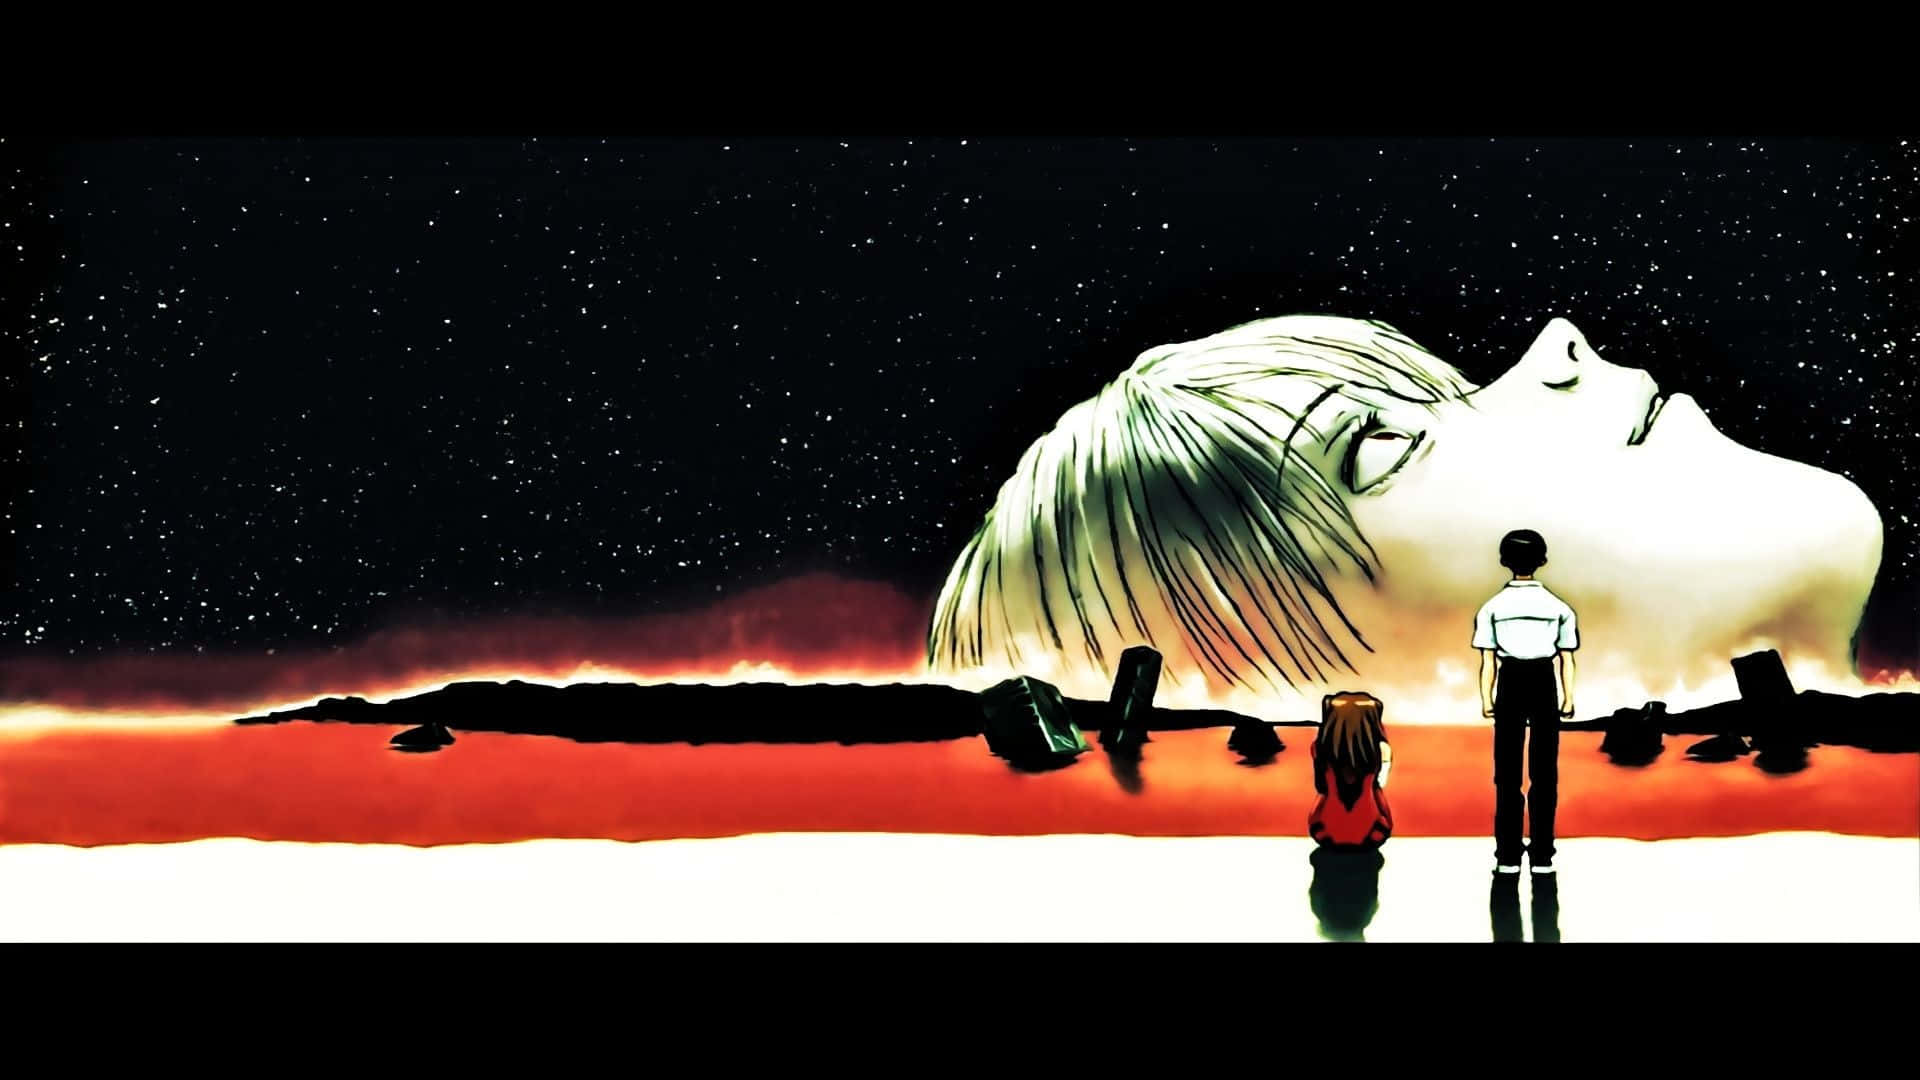 Erlebensie Den Nervenkitzel Der Entdeckung Im Geist Und Herzen Von Shinji Ikari. Wallpaper